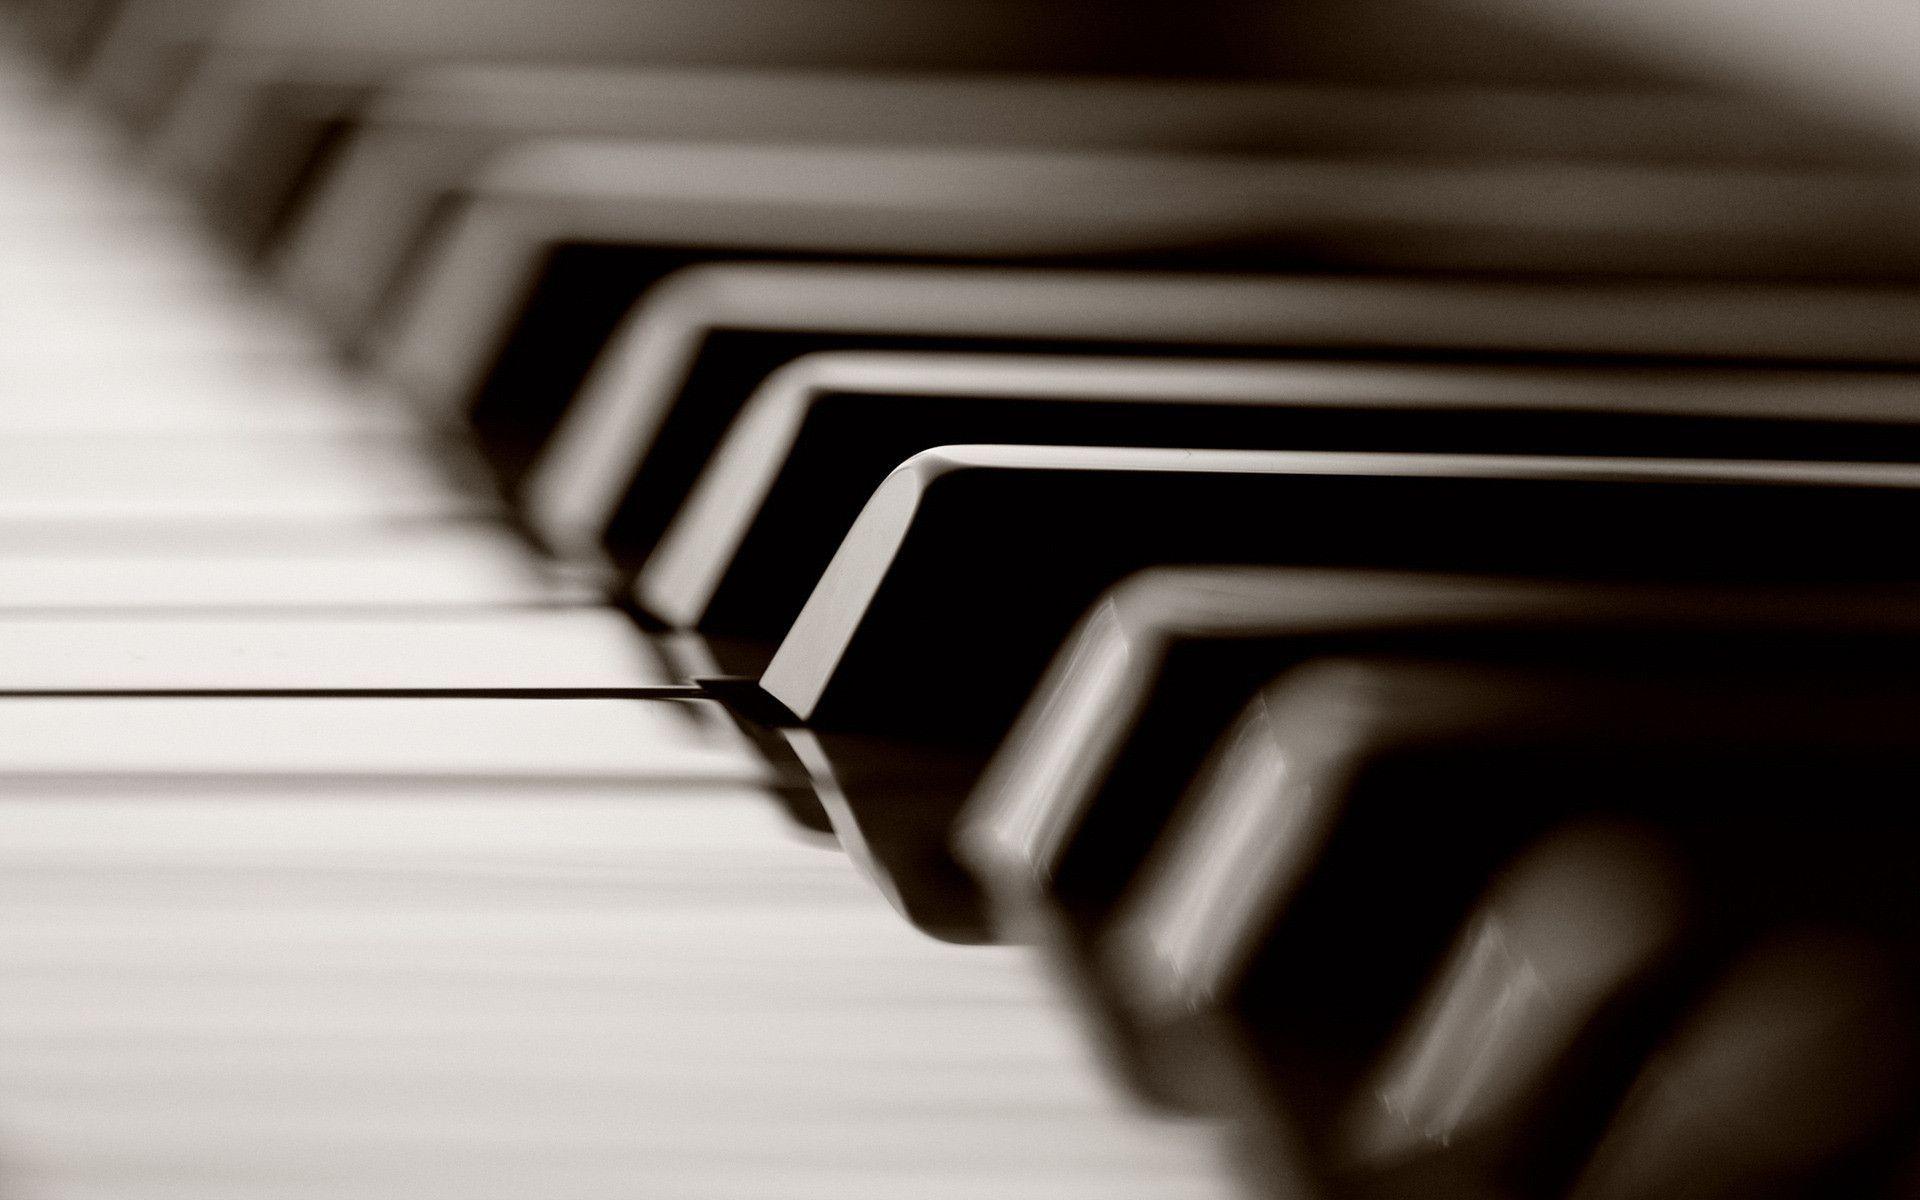 پیانو آکوستیک یا پیانو دیجیتال یا کیبورد؟